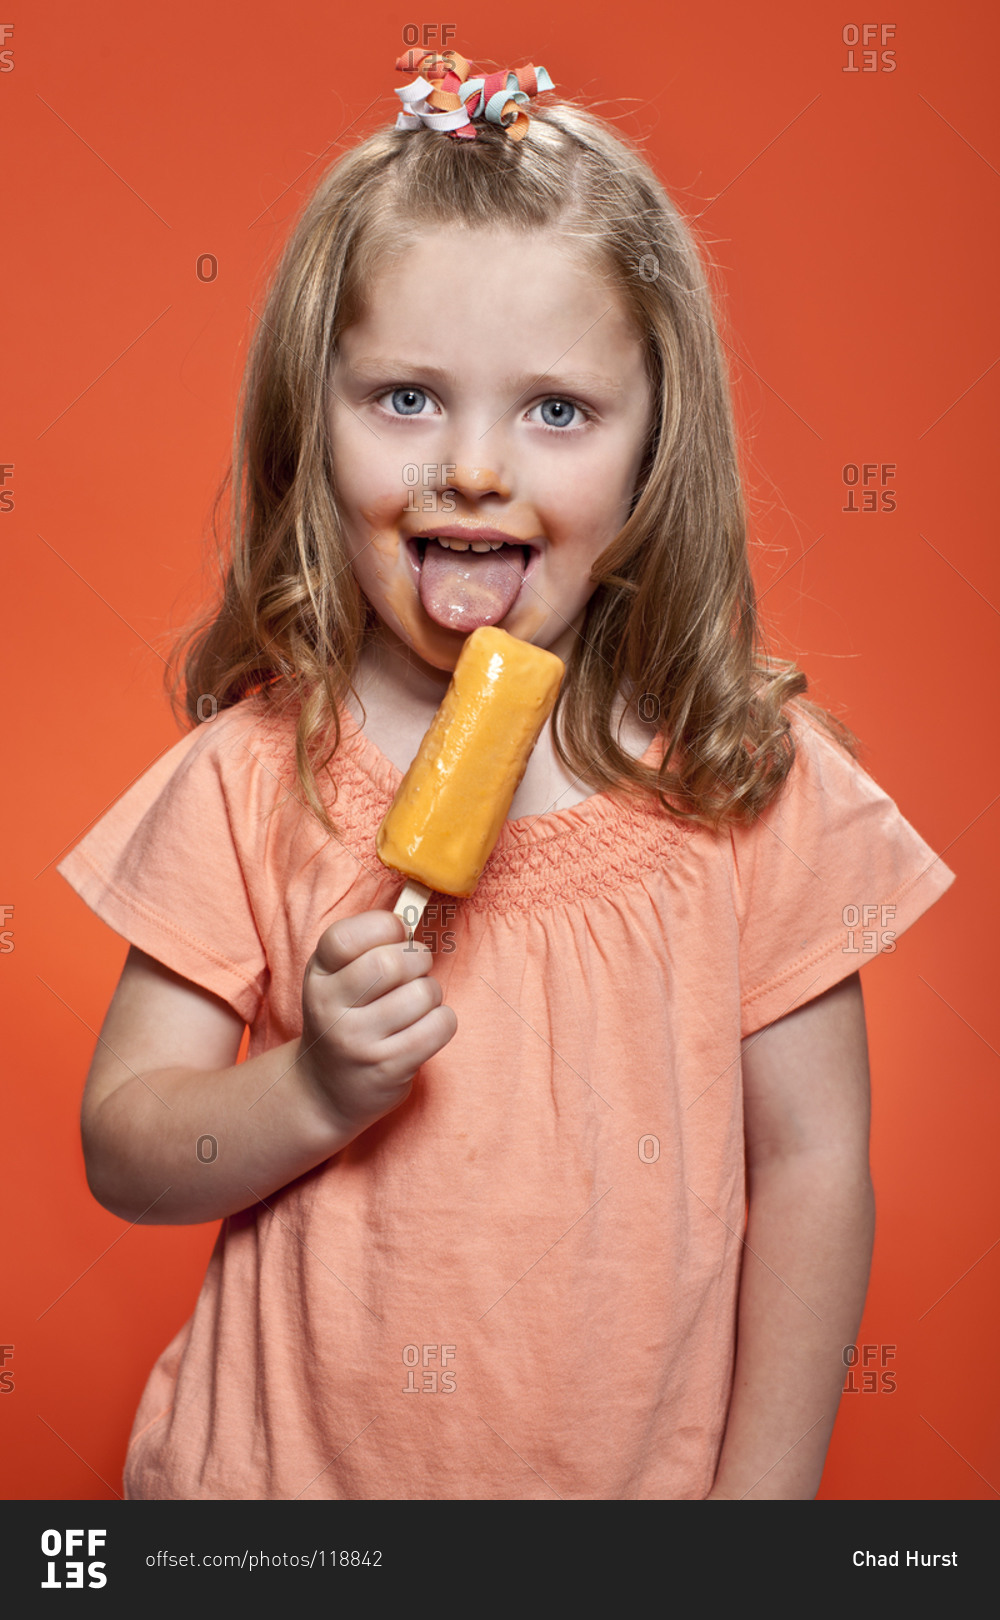 Little, long haired girl eating fruity ice cream bar